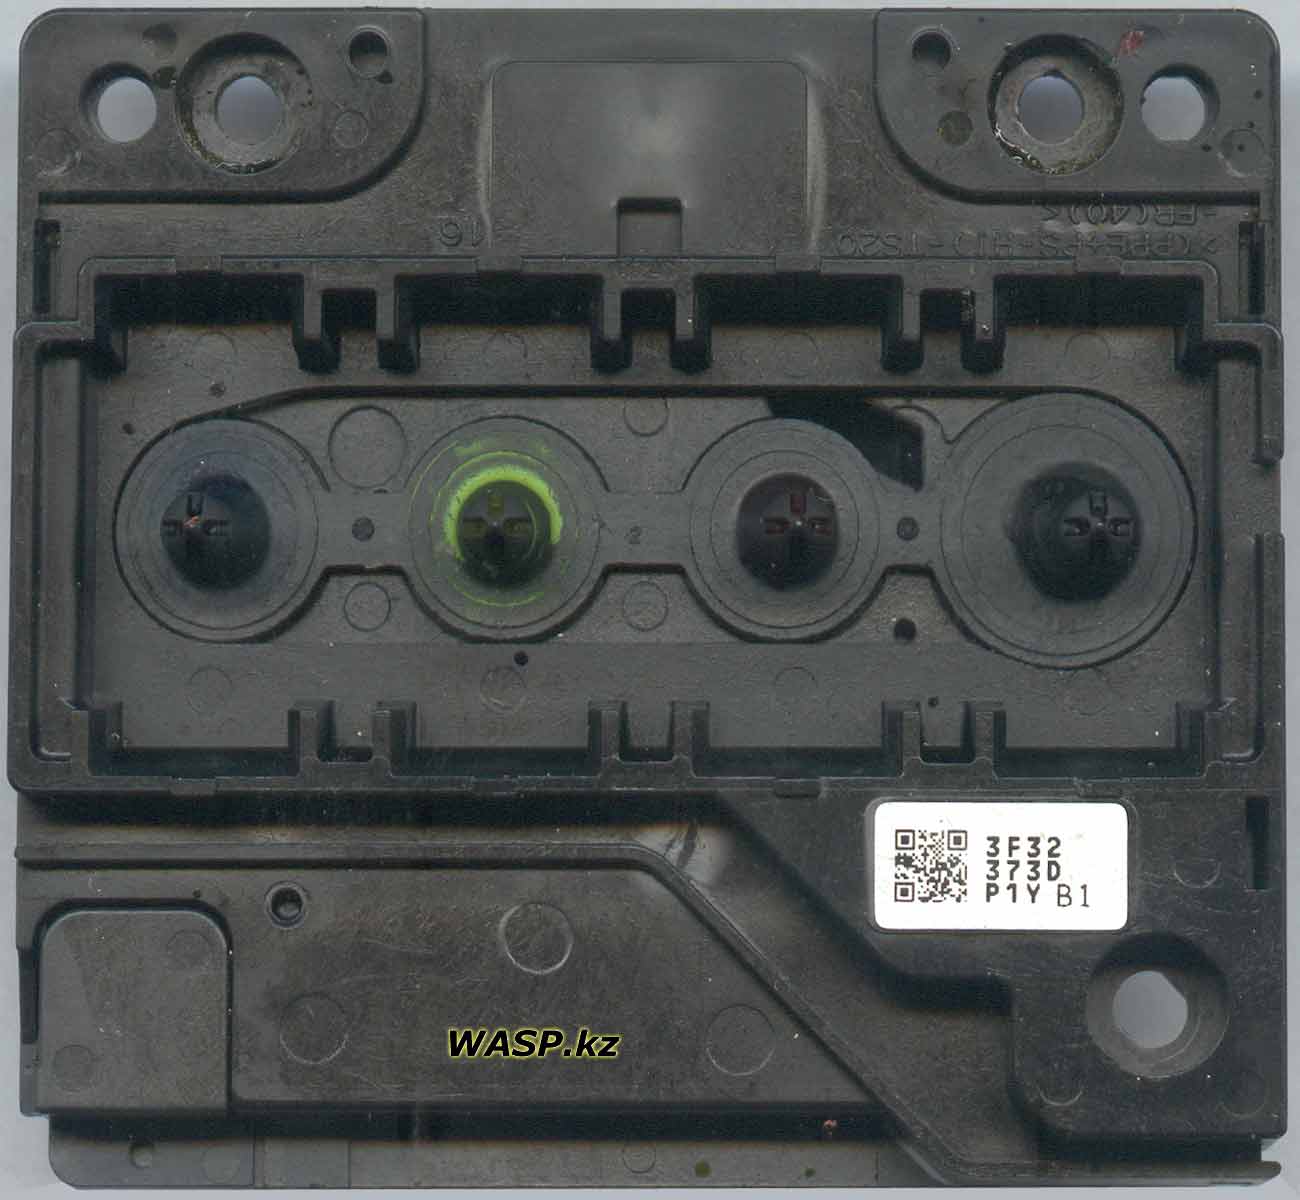 3F32 373D P1Y B1 головка печати в Epson Stylus SX130